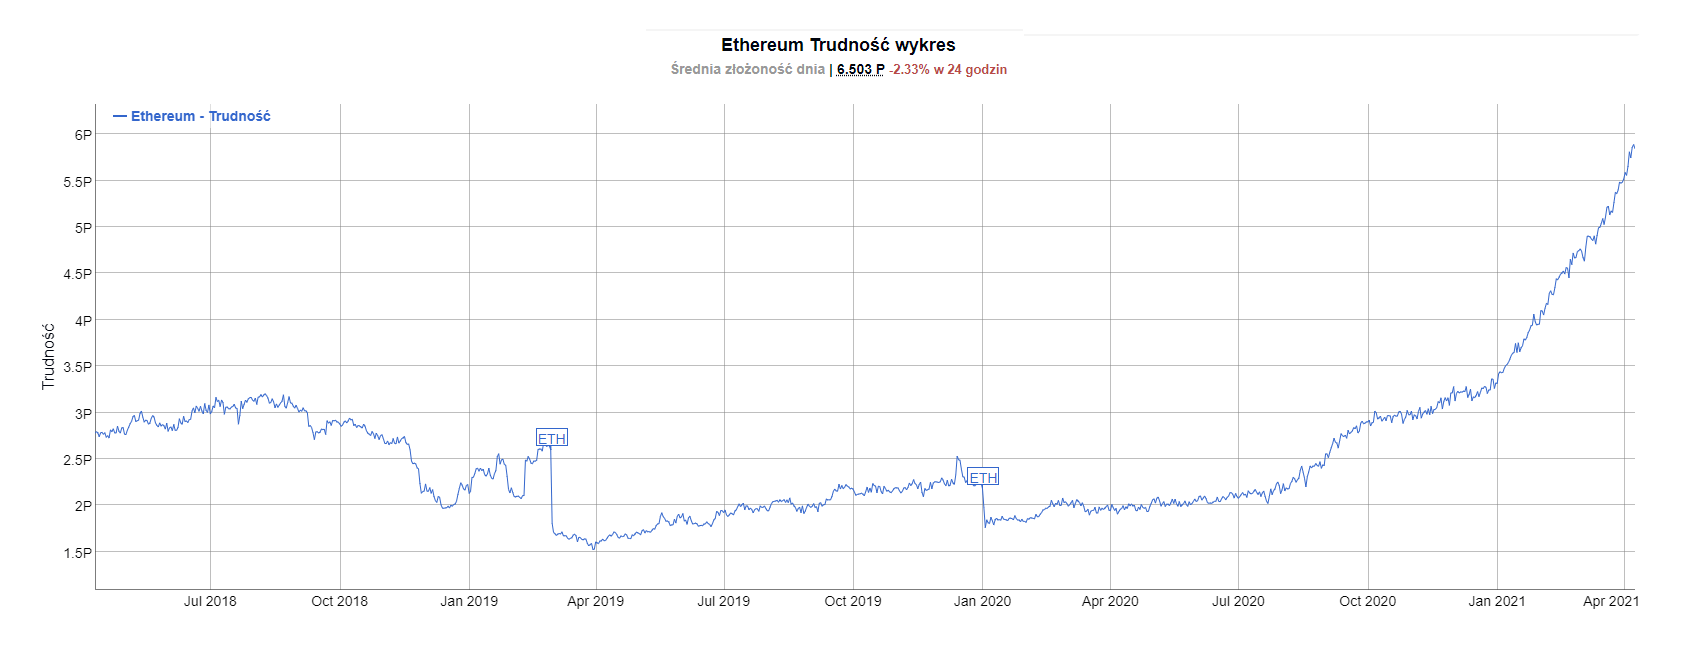 Trudność wydobycia Ethereum - wykres